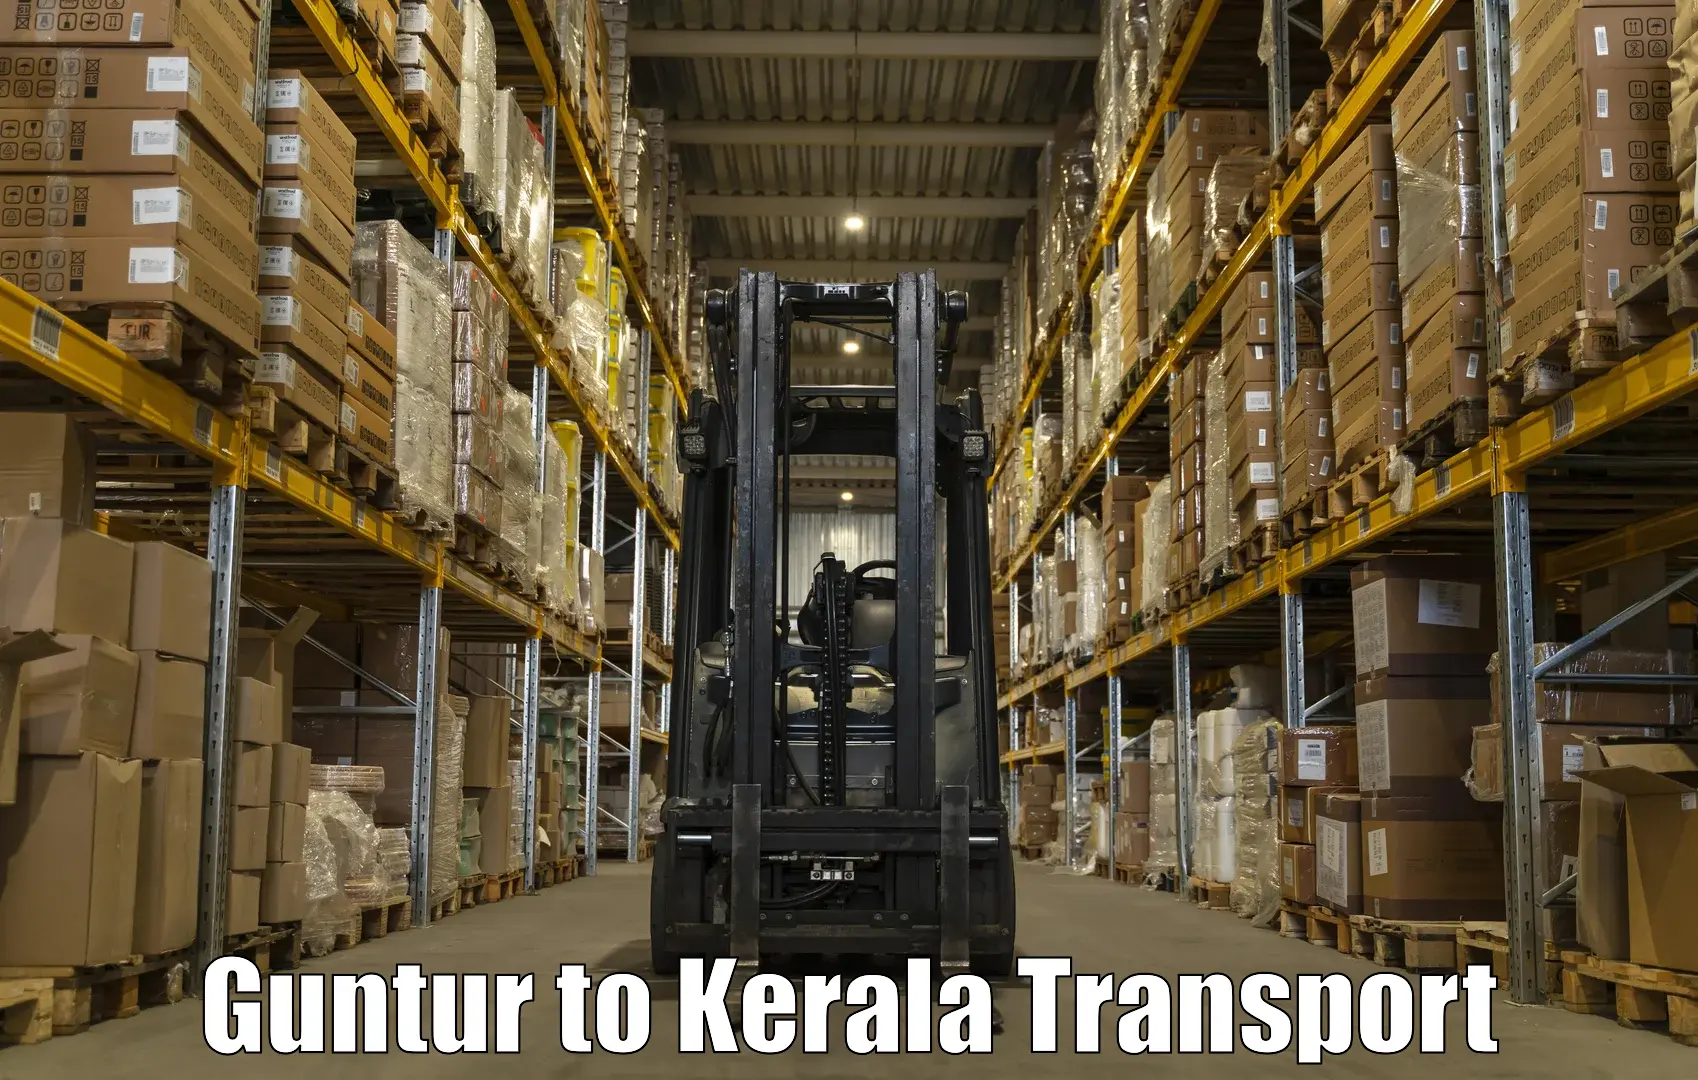 Door to door transport services Guntur to Kerala